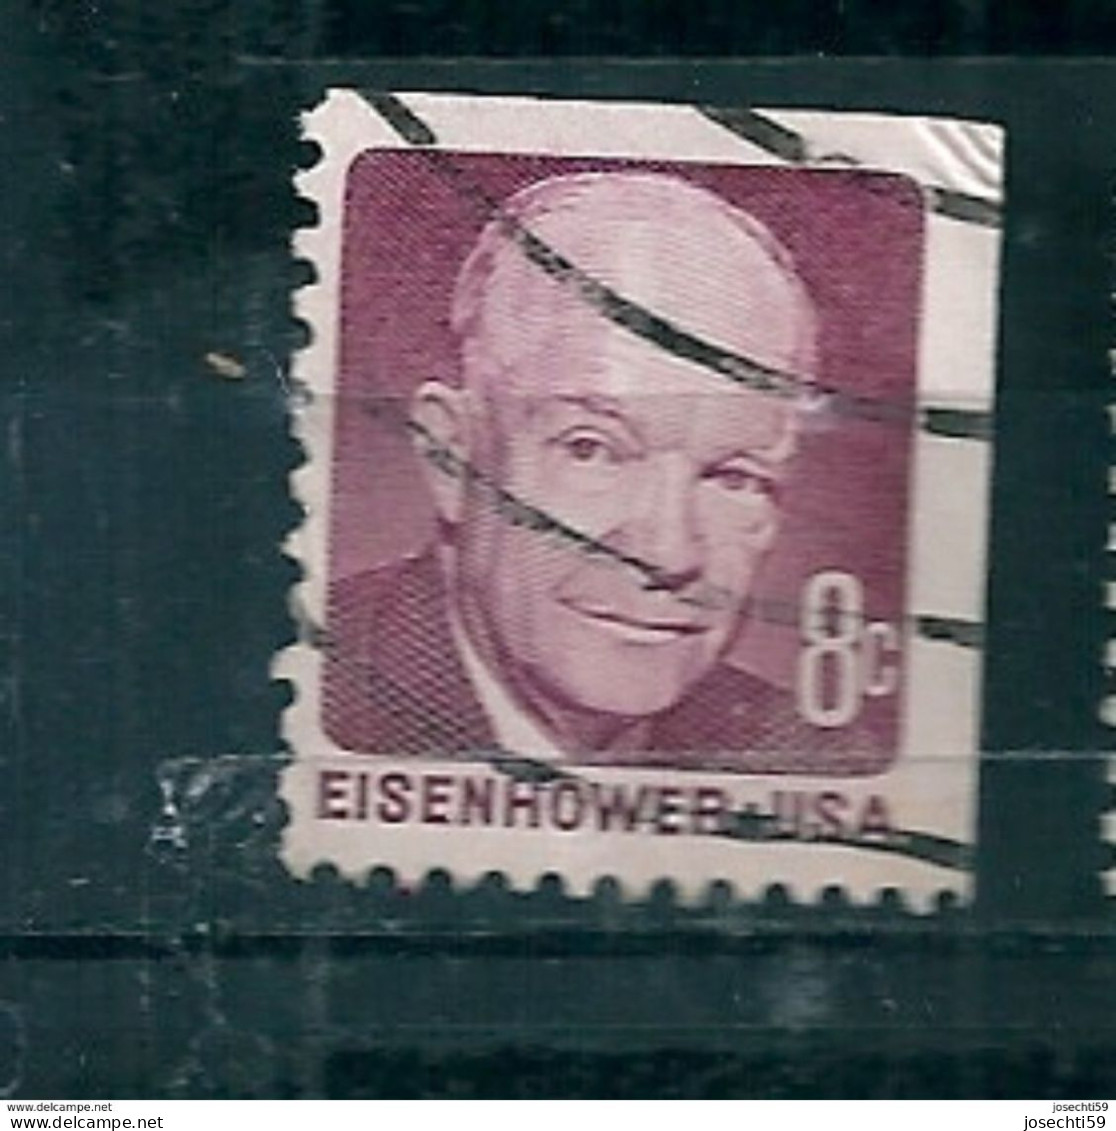 N°922 Dwight D. Eisenhower 8 Ct  USA Oblitéré 1971 Stamp Etats Unis D'Amérique Timbre USA - Usados